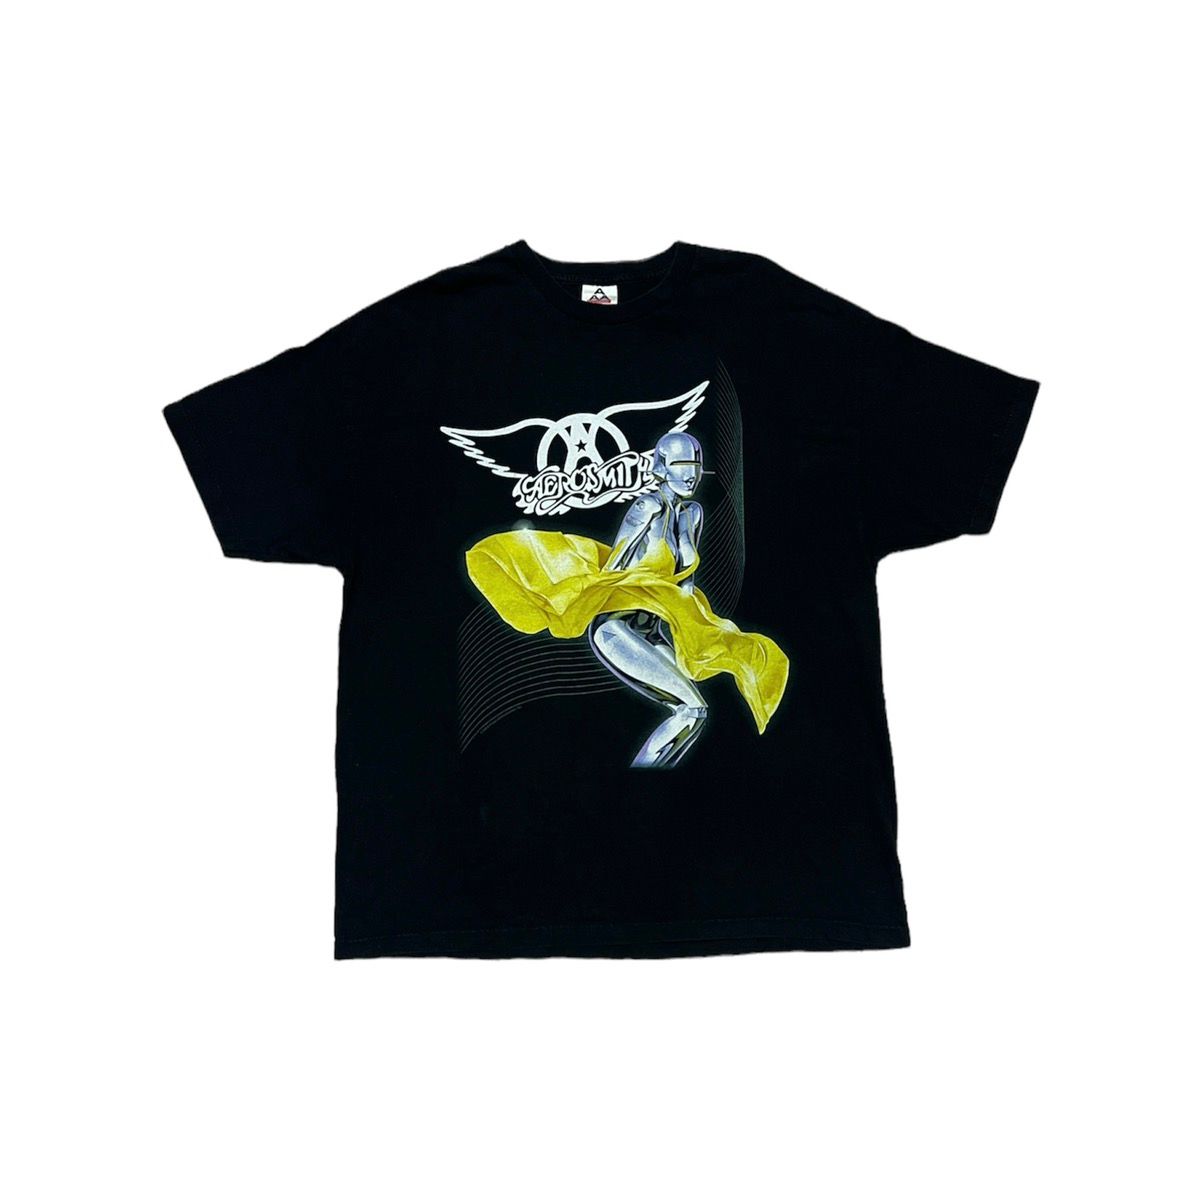 Vintage Aerosmith x Sorayama World Tour 2001 T shirt - 2